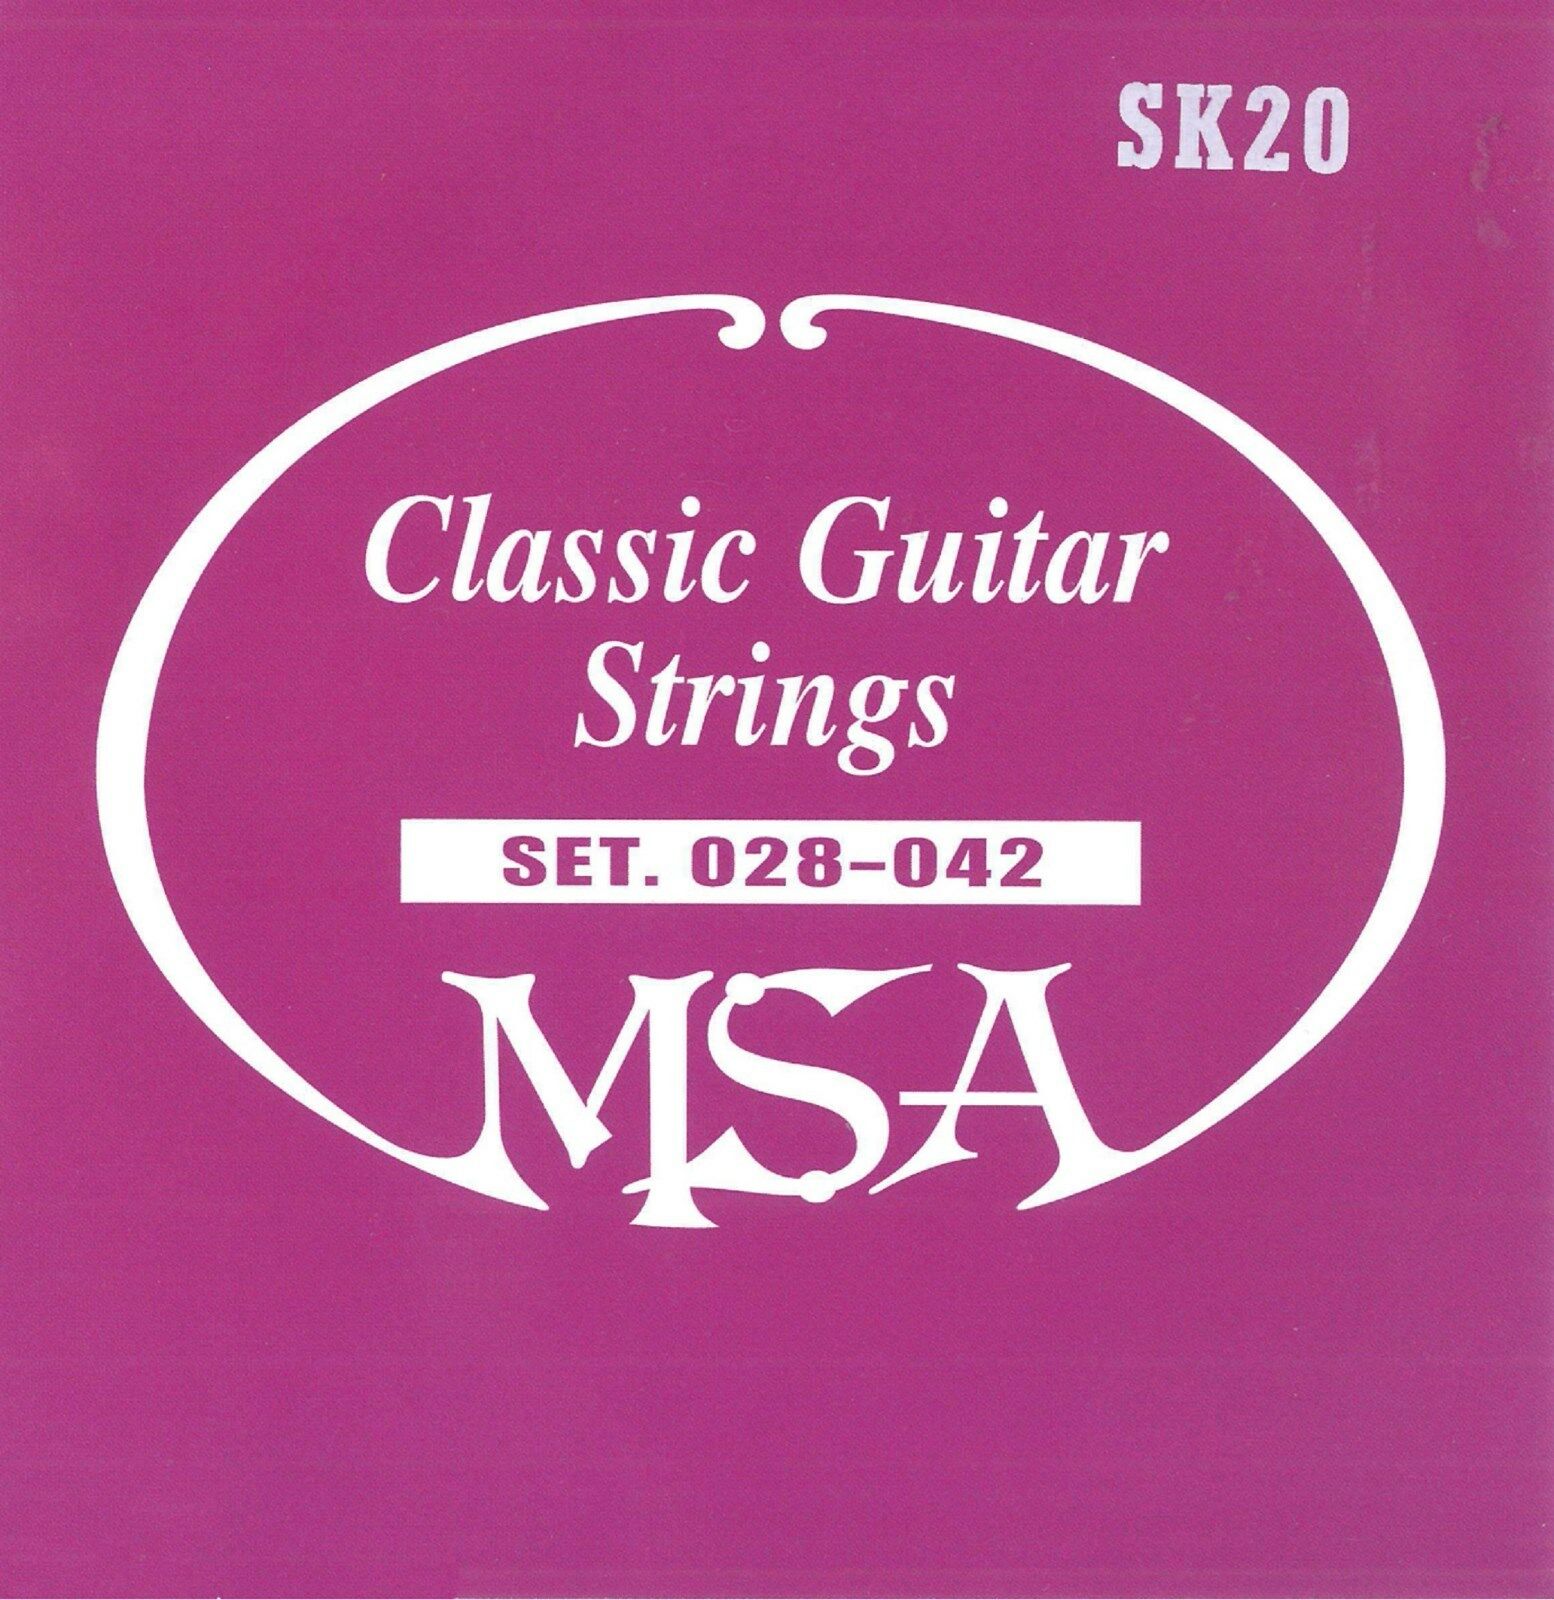 Kytarové nylonové struny - MSA SK20 - síla 028-042, 6 kusů